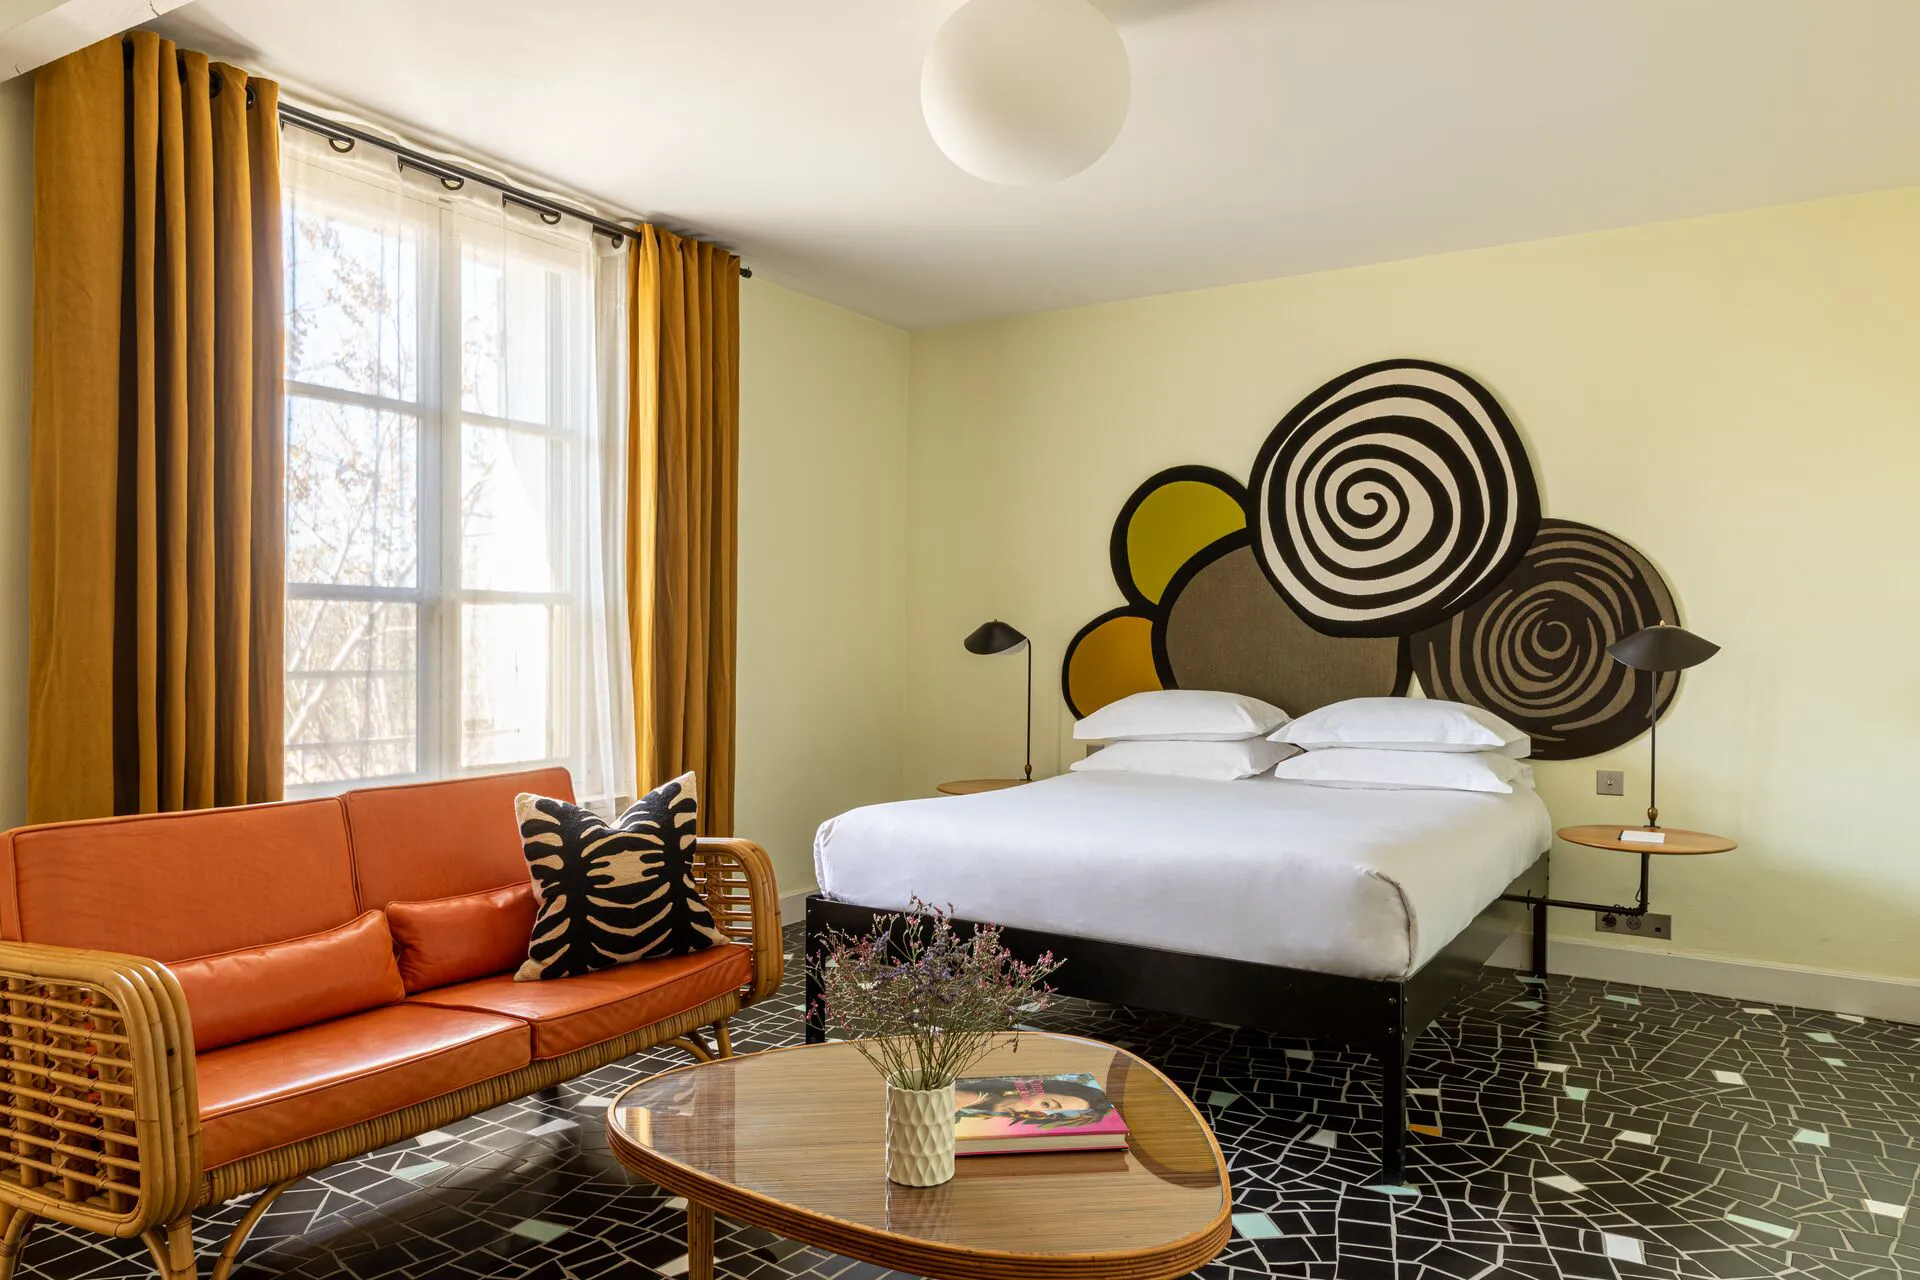 Chambre de l'hôtel Le Cloître. A gauche, une grande fenêtre encadrée de rideaux. Devant la fenêtre un canapé orange en rotin et cuir orange. au centre une table basse et un lit double.